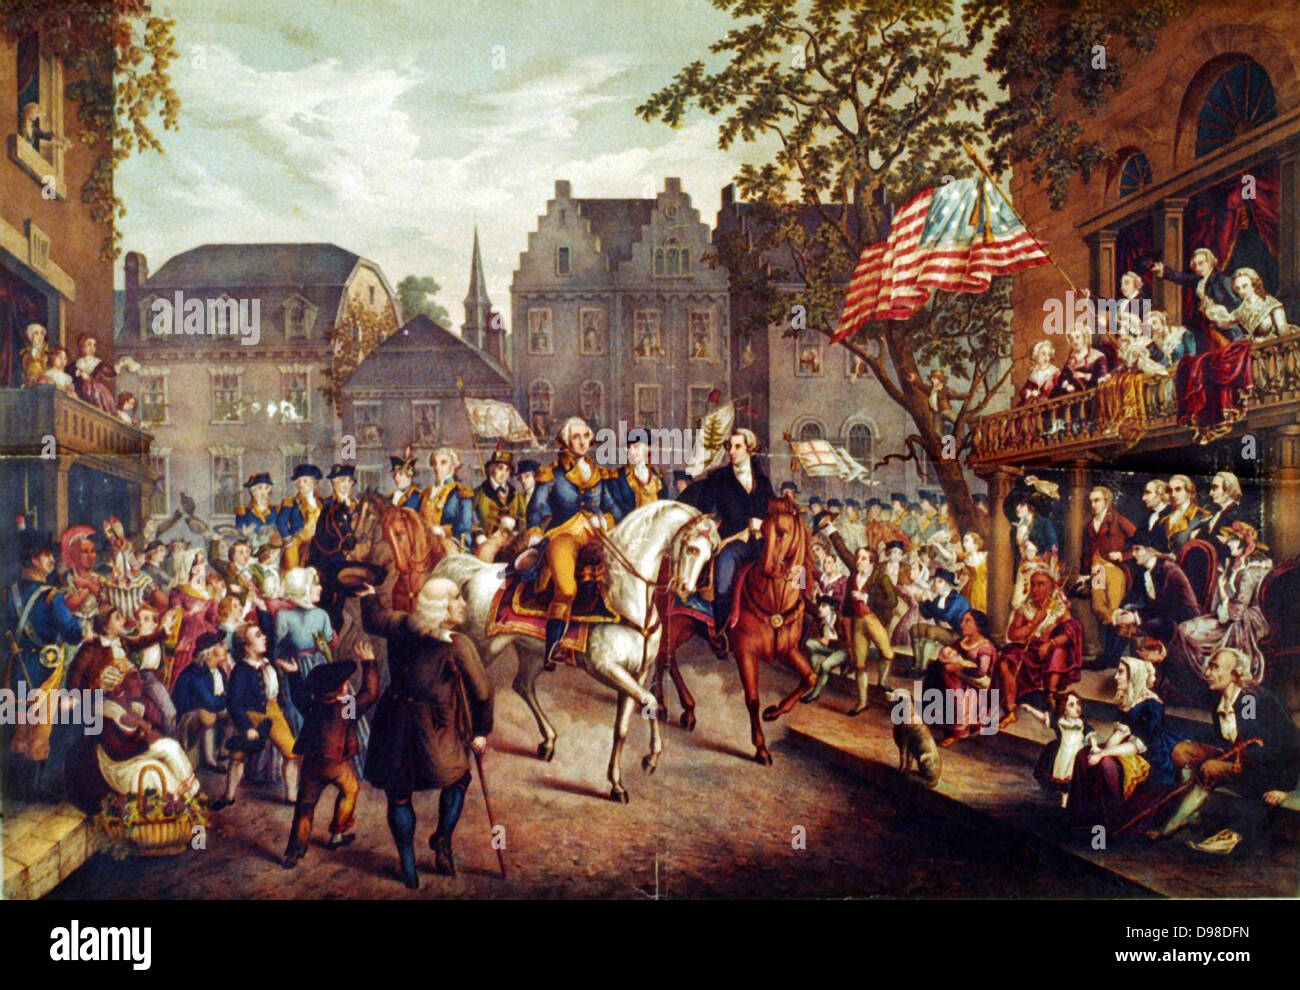 Guerre d'Indépendance américaine (Guerre d'INDÉPENDANCE AMÉRICAINE) 1775-1783 : entrée triomphale de George Washington à New York, 25 novembre 1783. Fin du xixe siècle d'impression. Banque D'Images